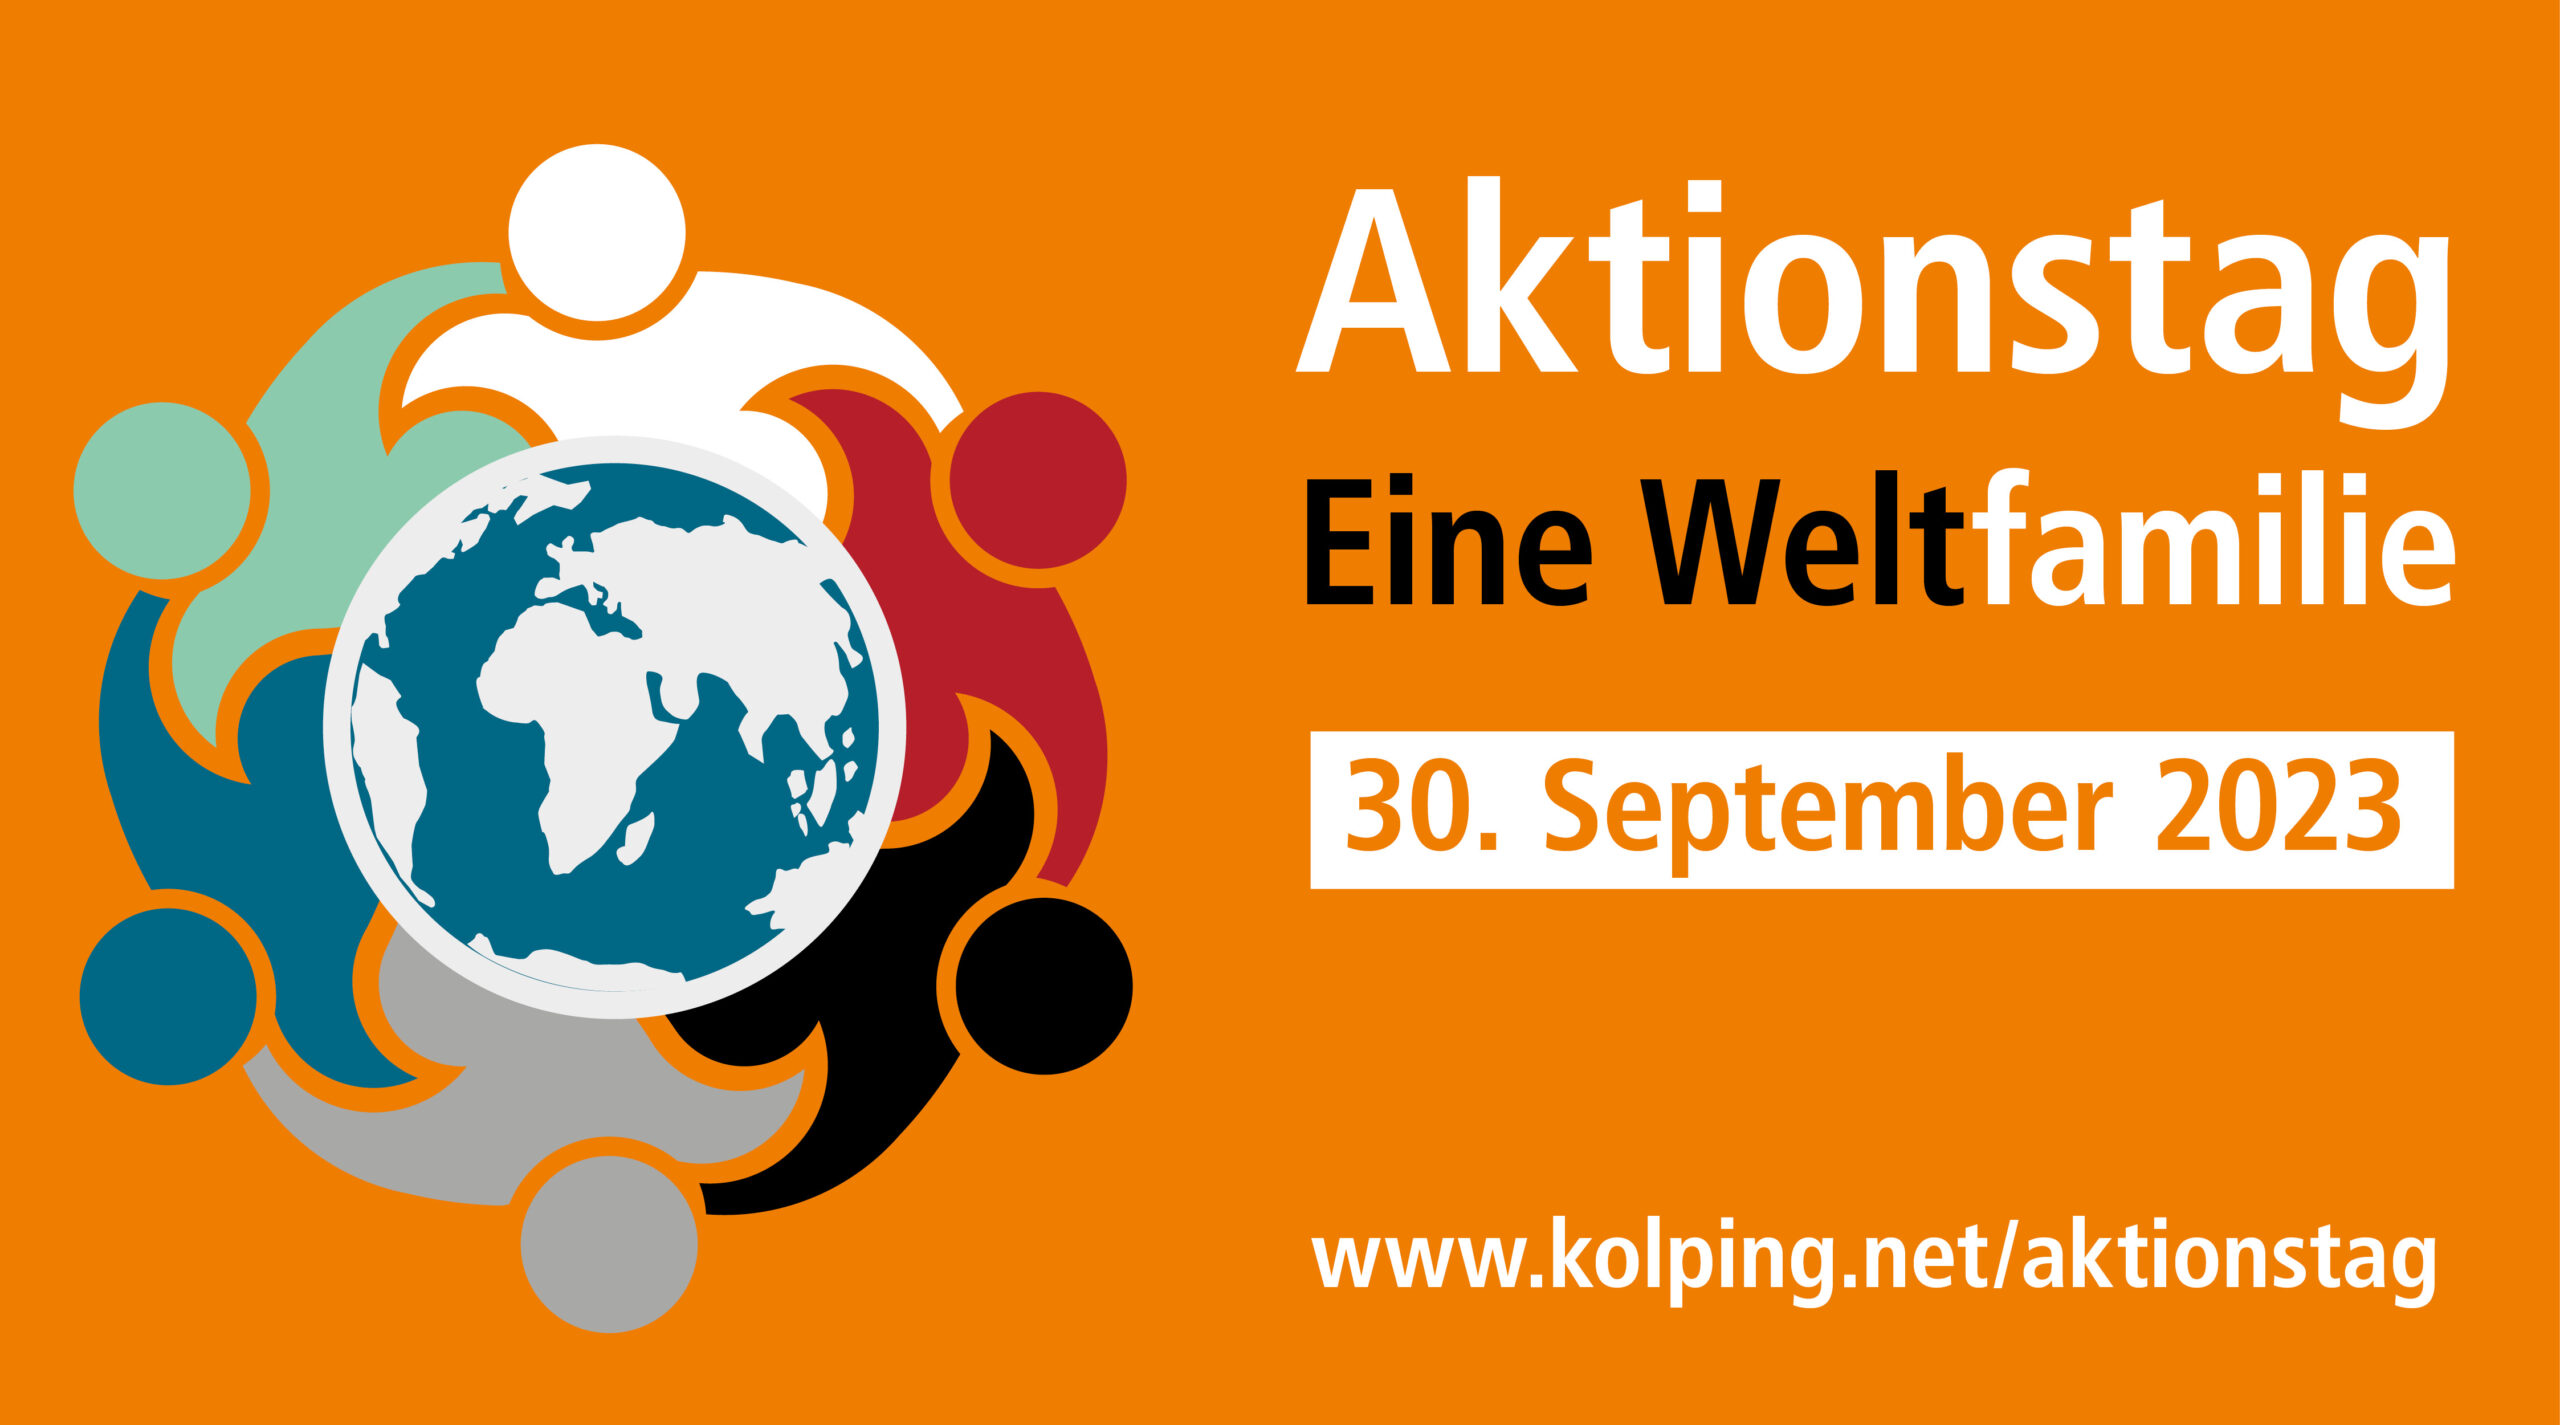 Aktionstag Eine Weltfamilie von Kolping International am 30. September 2023 - Anmeldungen in Kürze möglich.